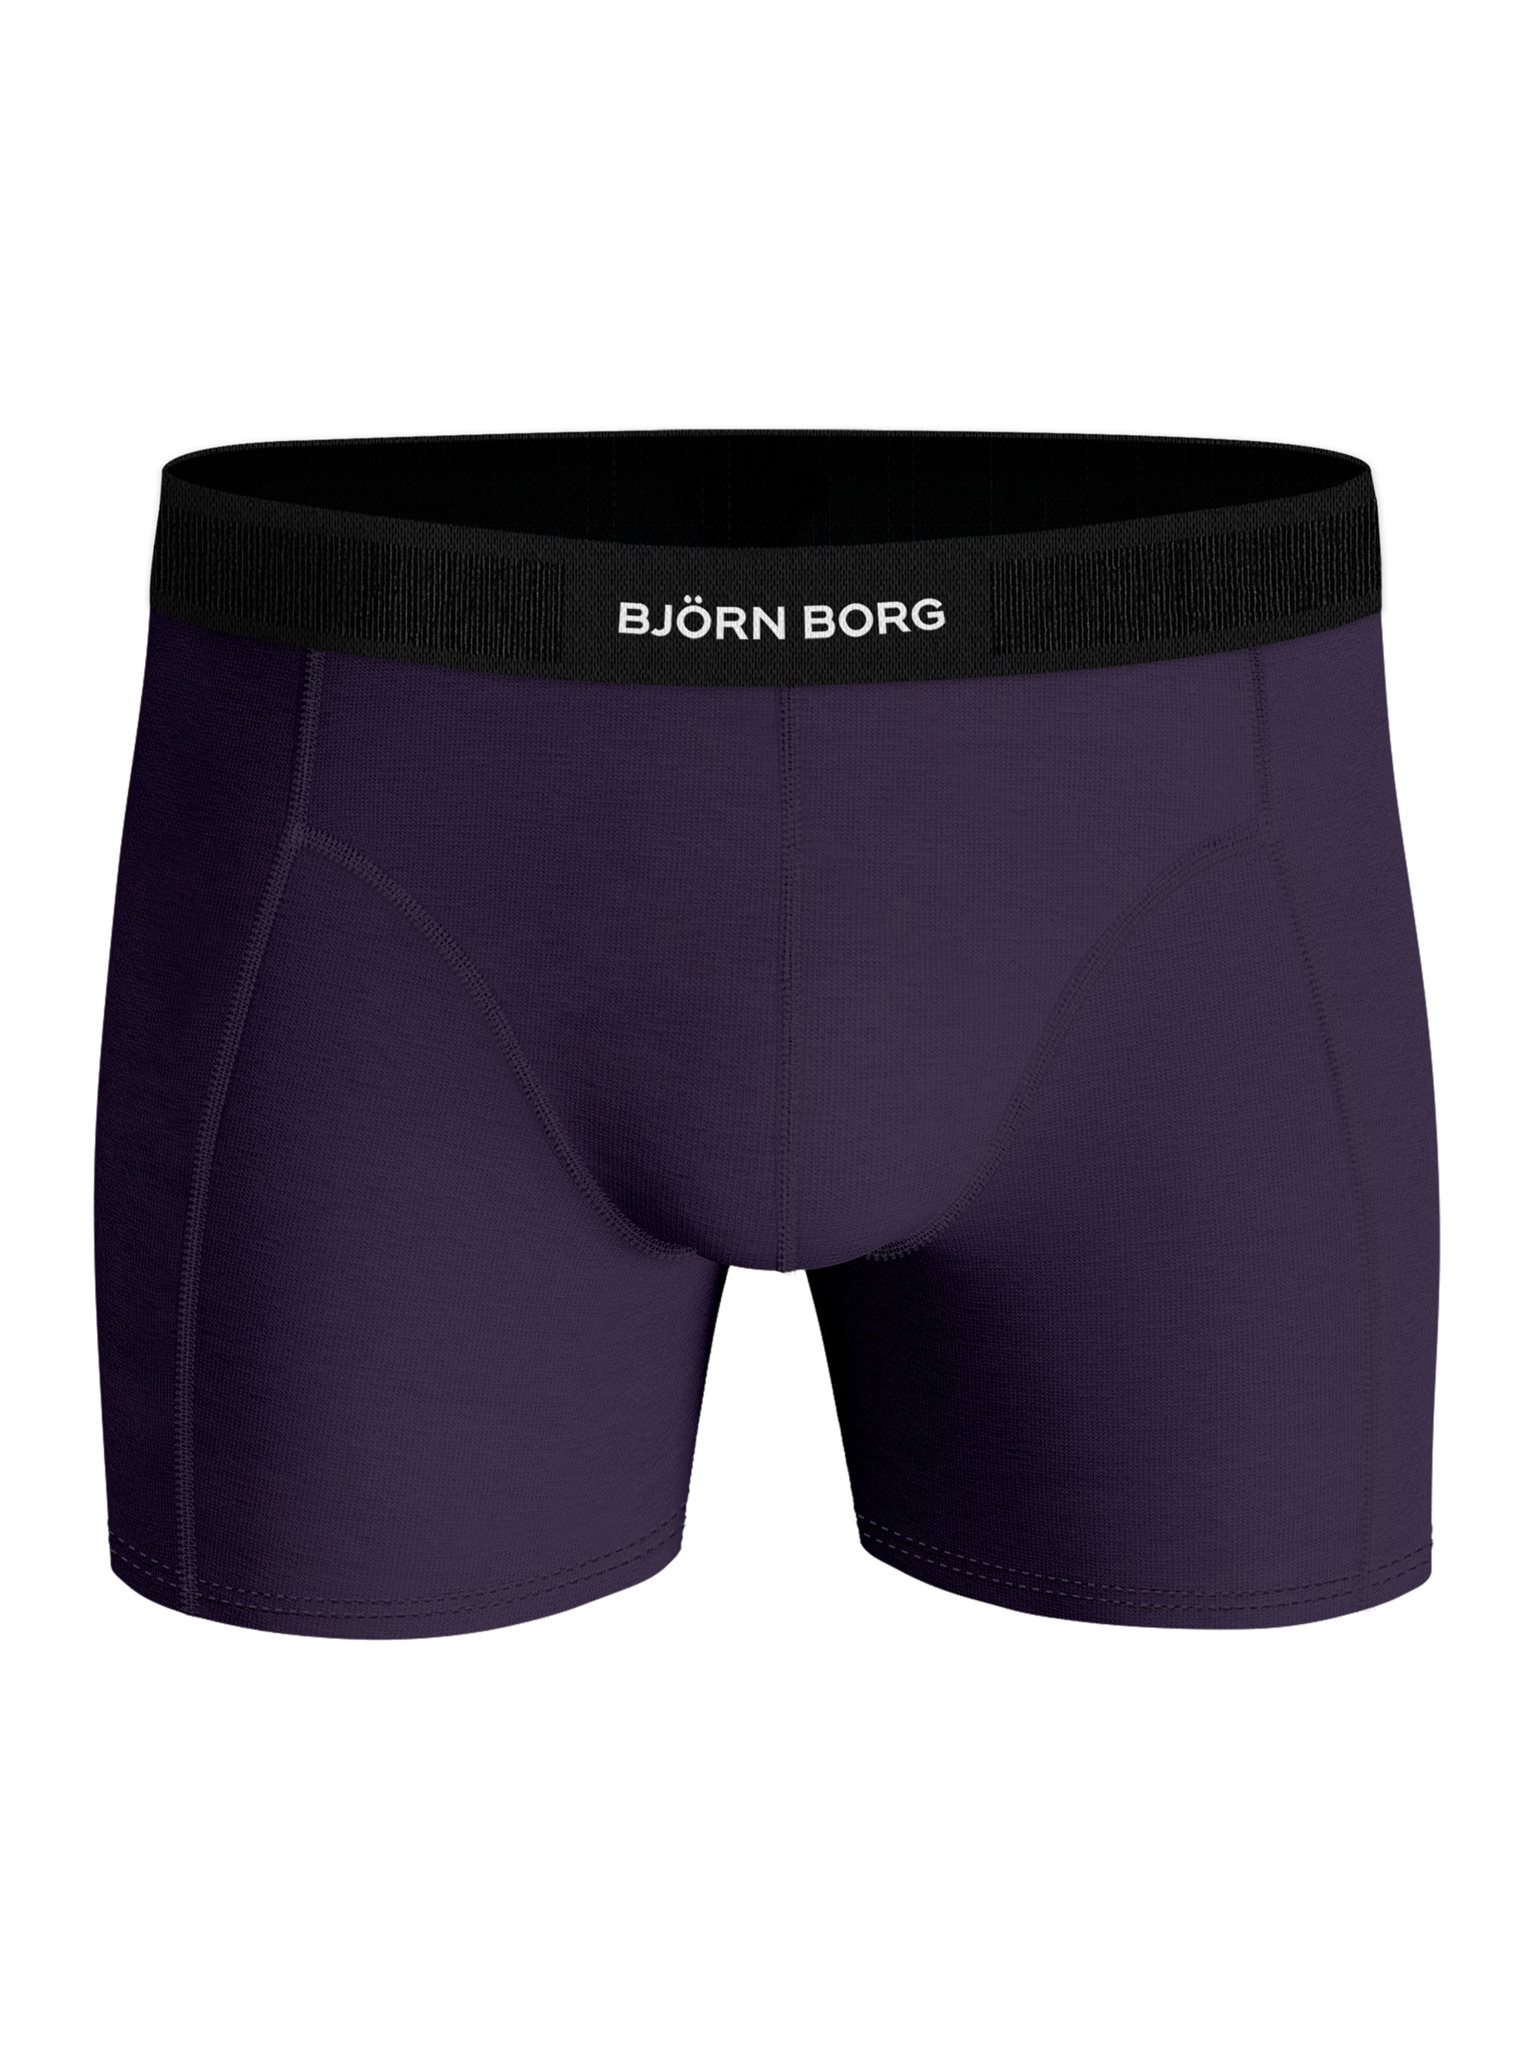 Bjorn Borg Premium Cotton Stretch 3-PACK Short 